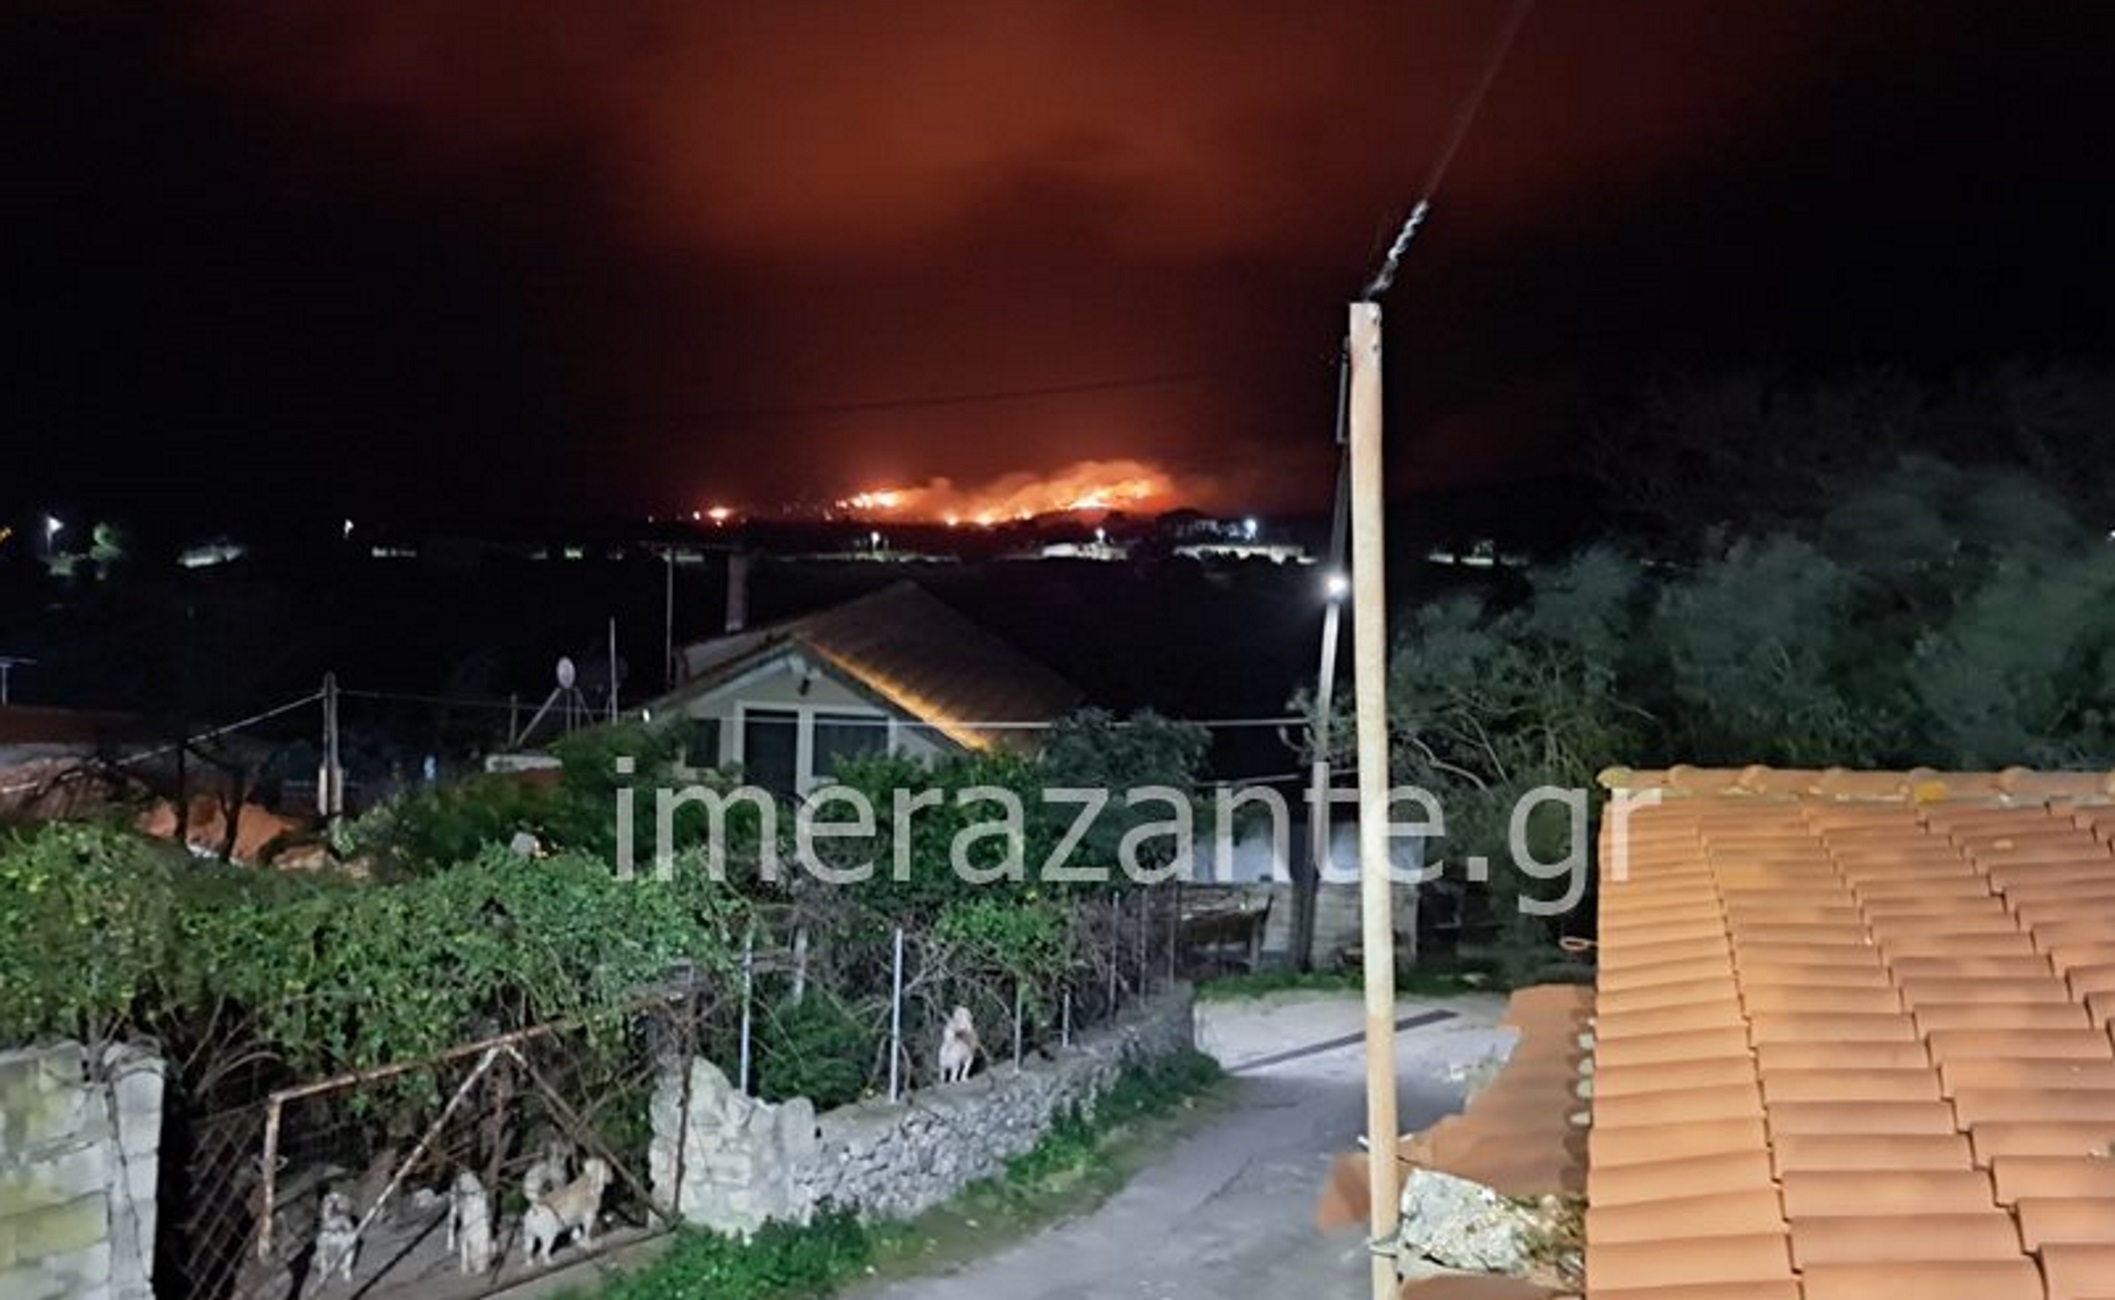 Ζάκυνθος: Υπό έλεγχο η φωτιά που έκαψε 170 στρέμματα δάσους – Εικόνες από τη μάχη της κατάσβεσης